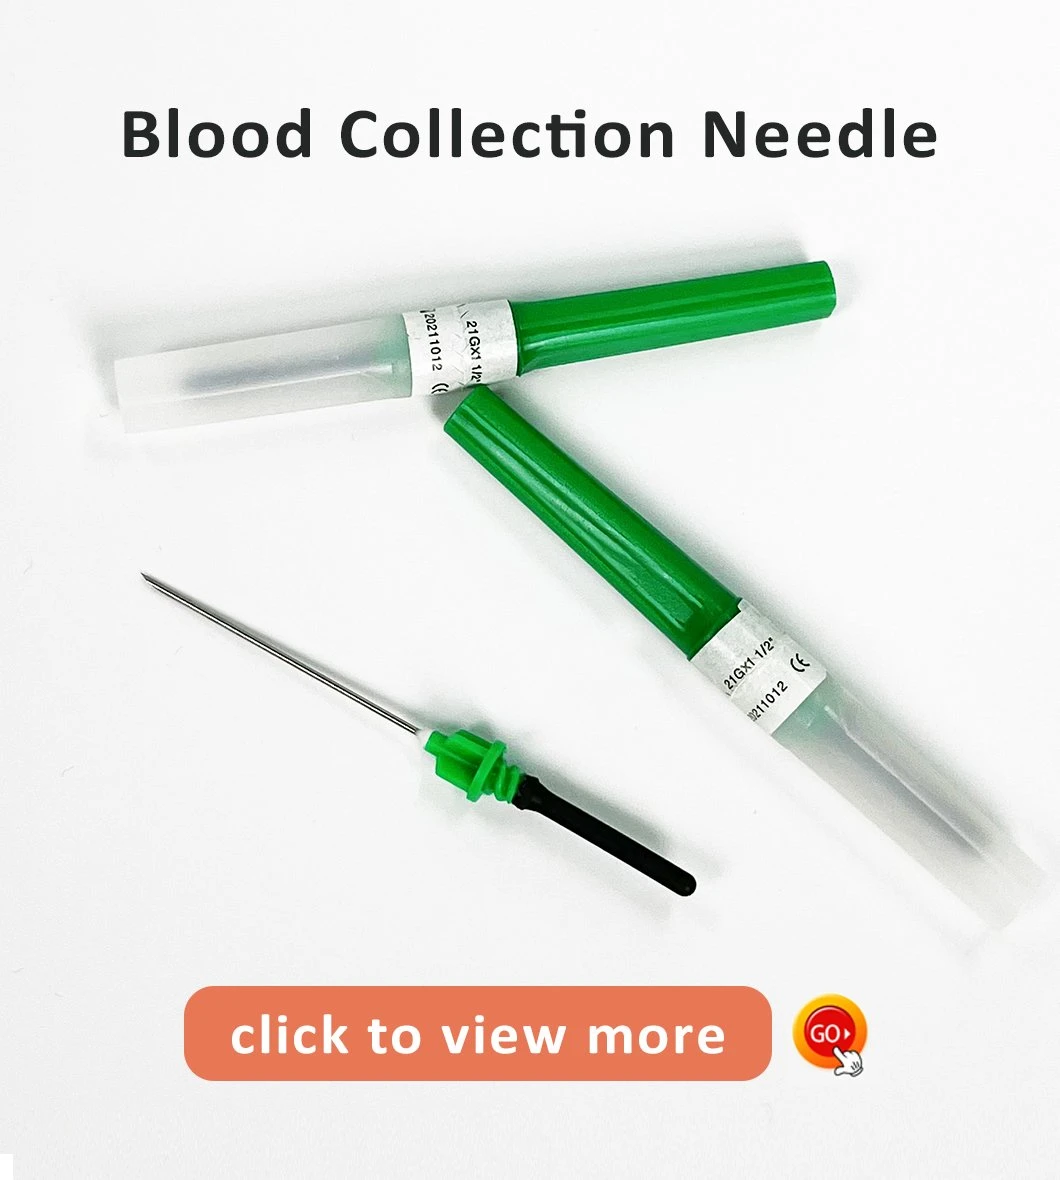 Горячая продажа медицинских одноразовых вакуумных игл для сбора крови и трубок